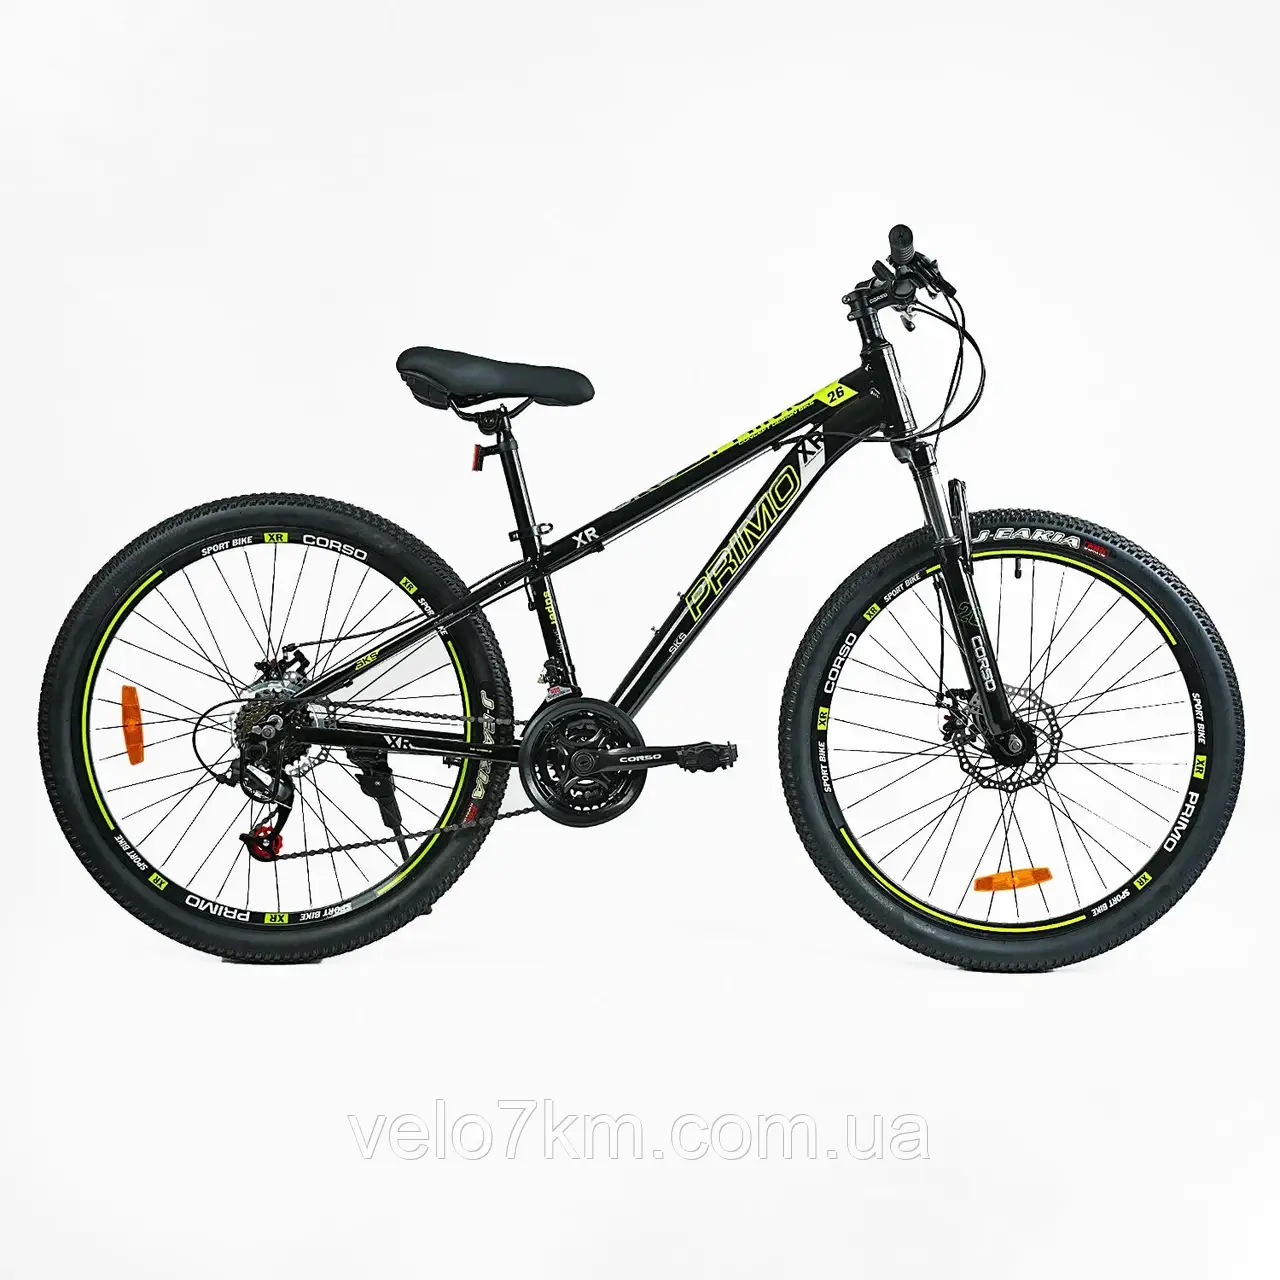 Гірський спортивний велосипед Corso Primo 26" алюмінієва рама 13", Saiguan 21S, зібраний в коробці на 75%